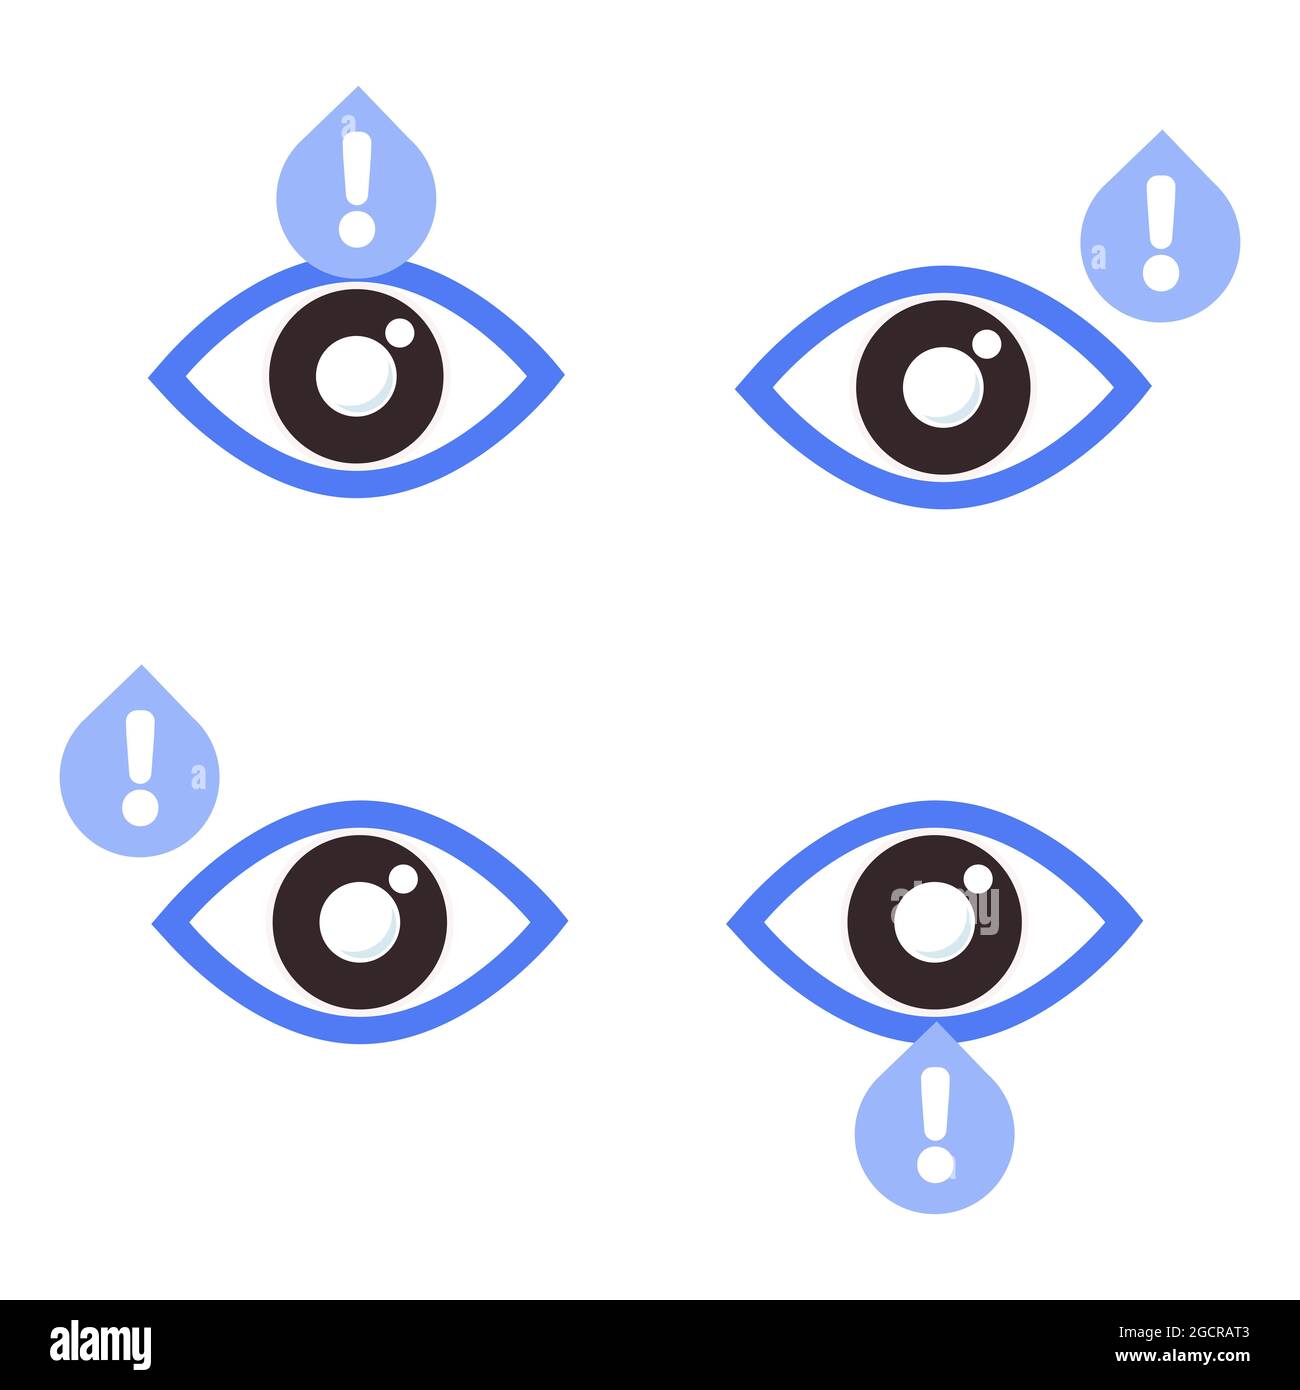 œil avec icône de signe d'avertissement. icône de santé des yeux pour le concept de la journée mondiale de la vue. sur fond blanc Banque D'Images